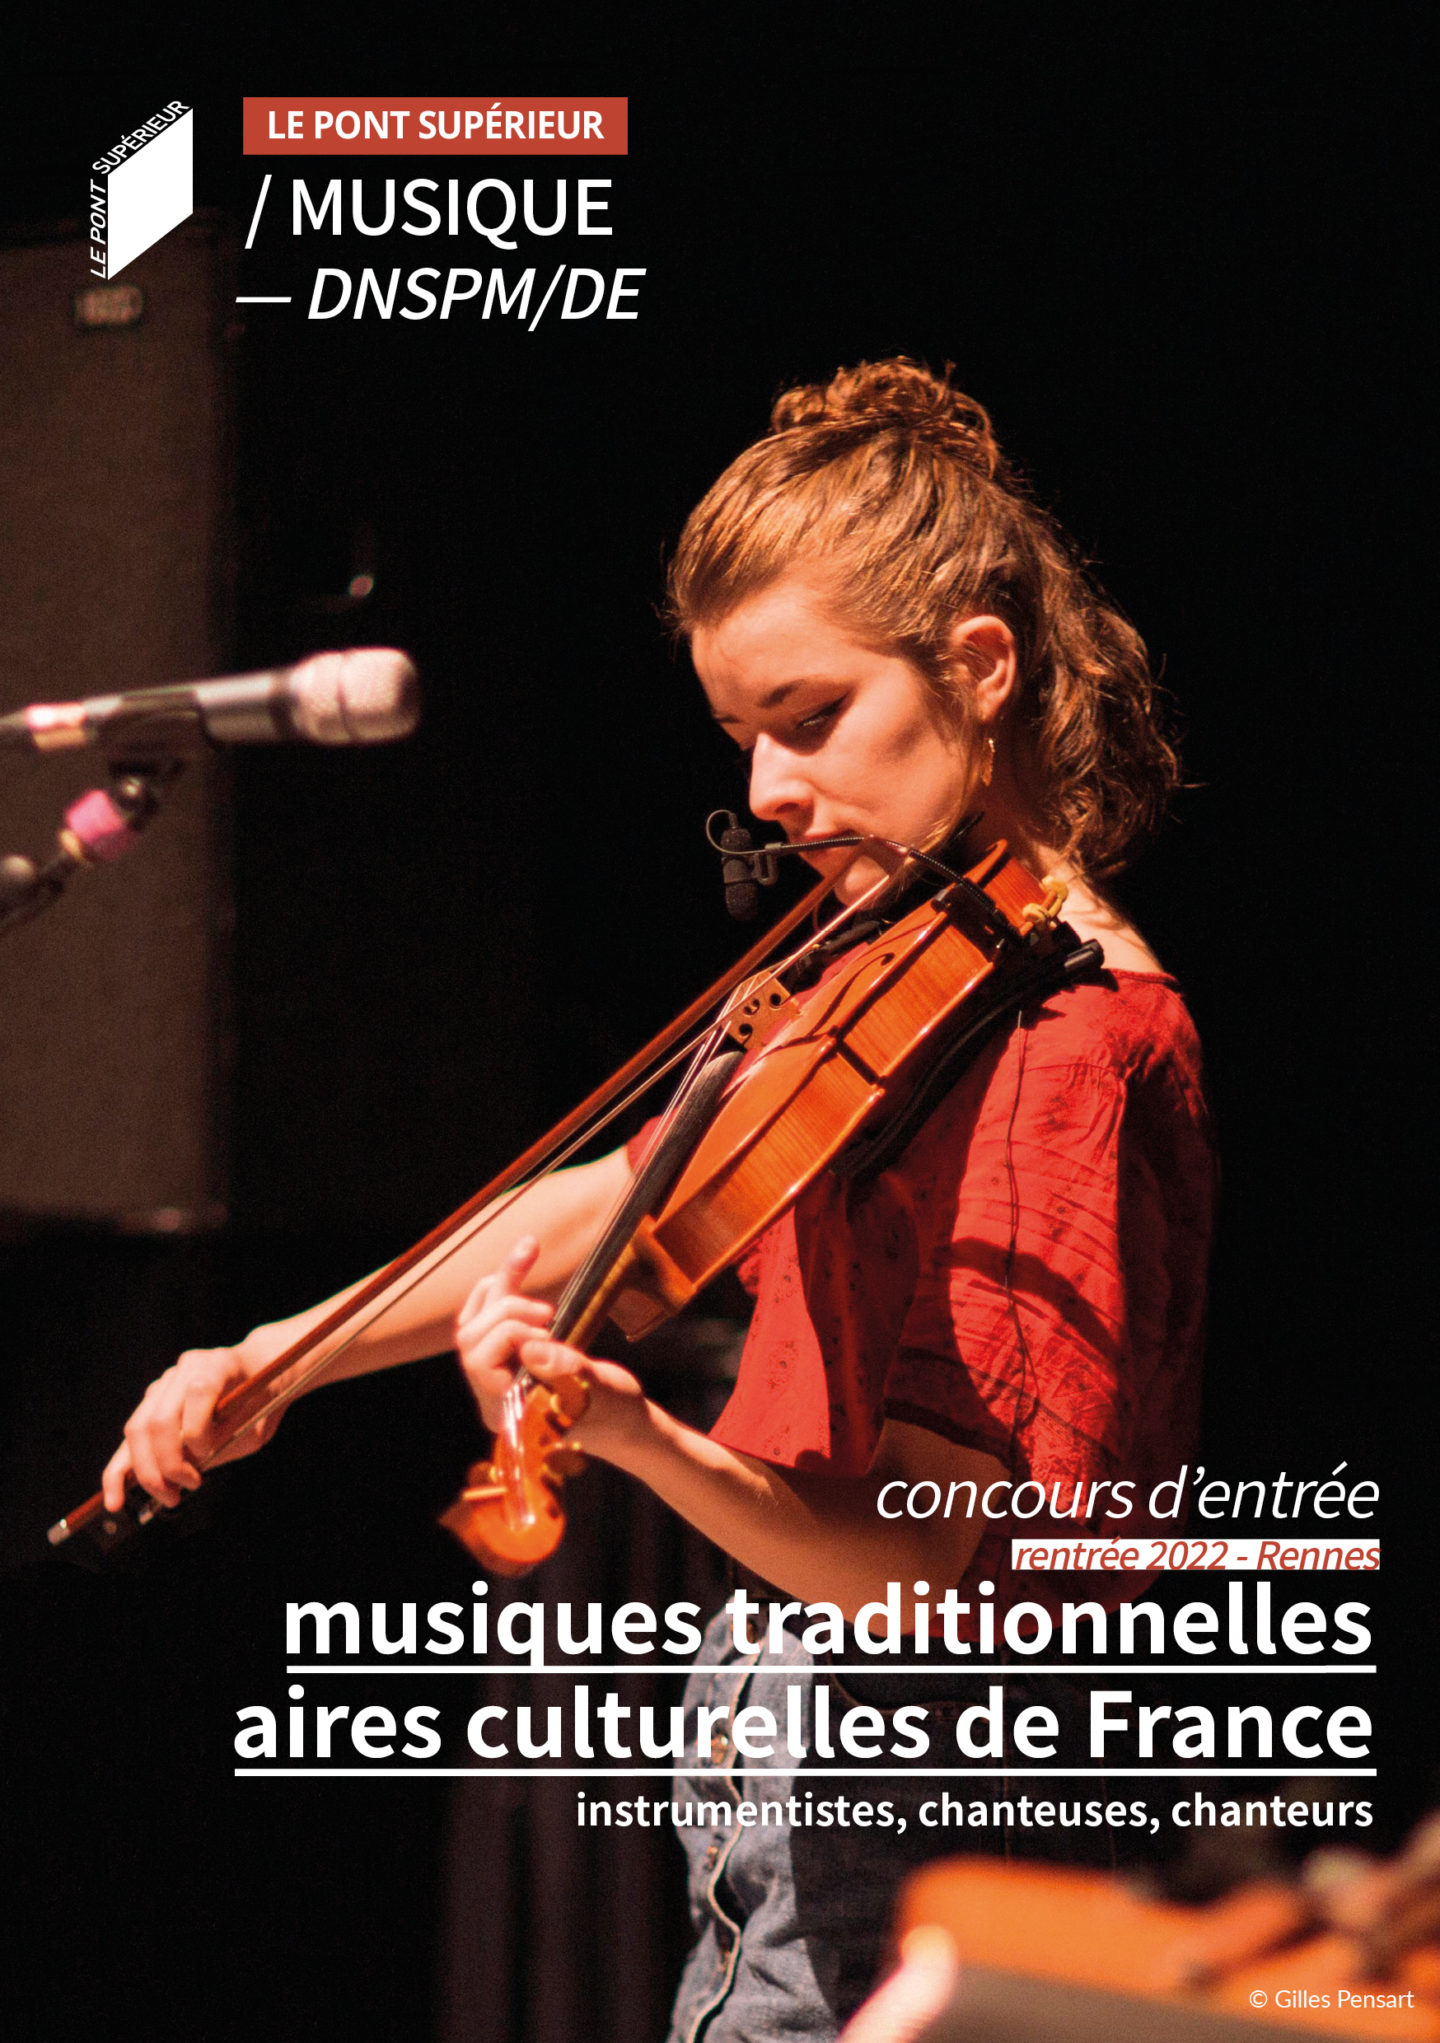 Le Pont Supérieur ouvre sa formation musiques traditionnelles à toutes les aires culturelles régionales de France